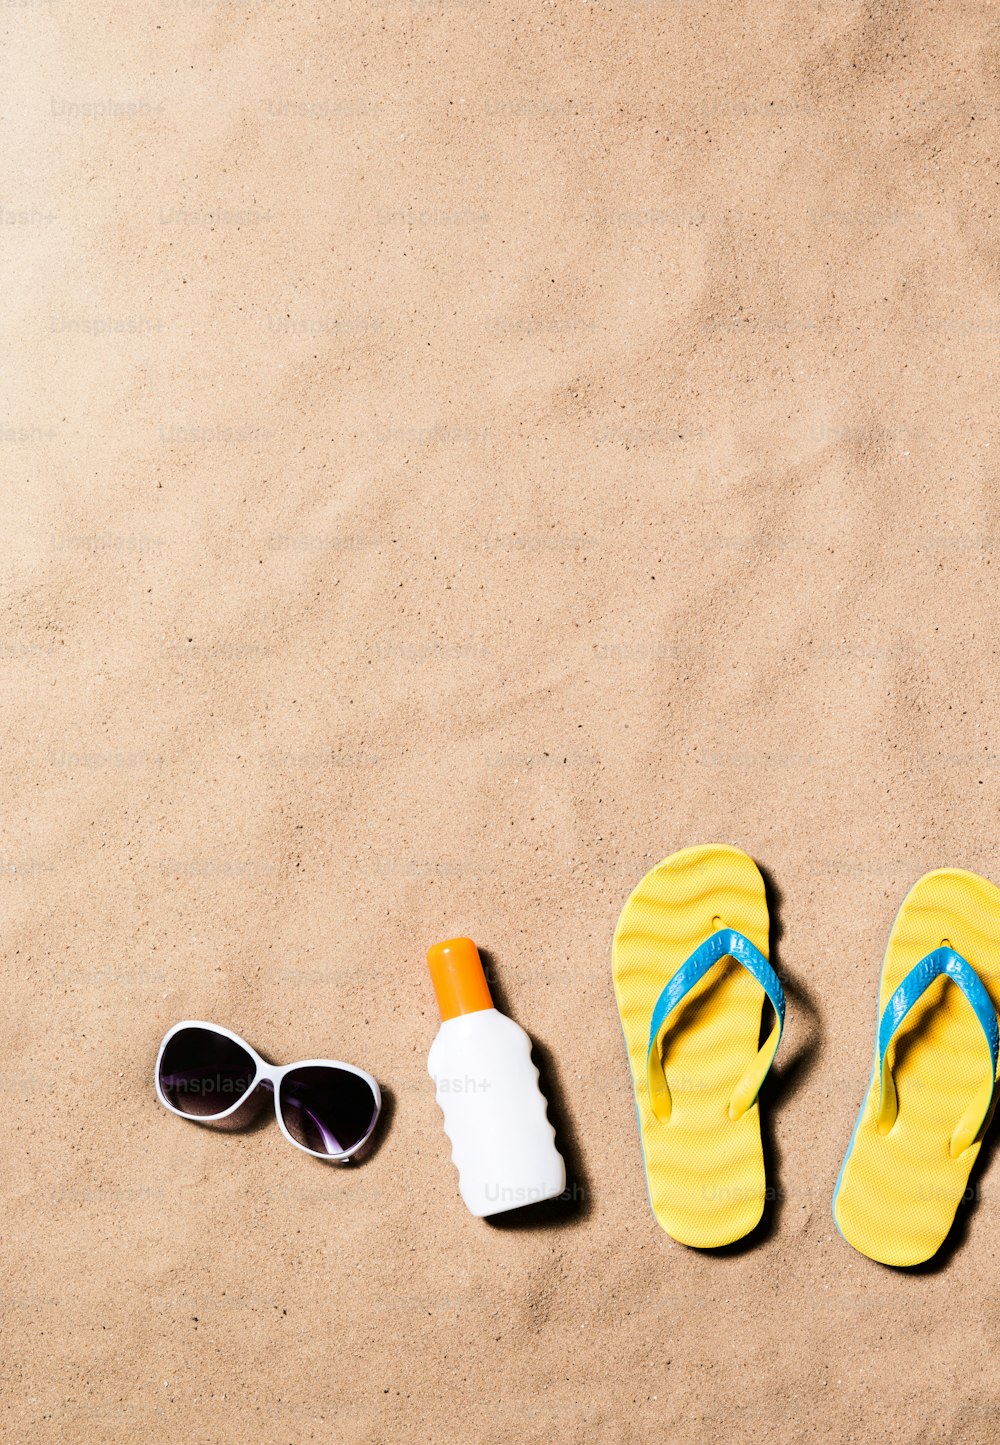 Composición de vacaciones de verano con un par de sandalias amarillas, gafas de sol y crema bronceadora en una playa. Fondo de playa de arena, toma de estudio, plano plano. Espacio de copia.